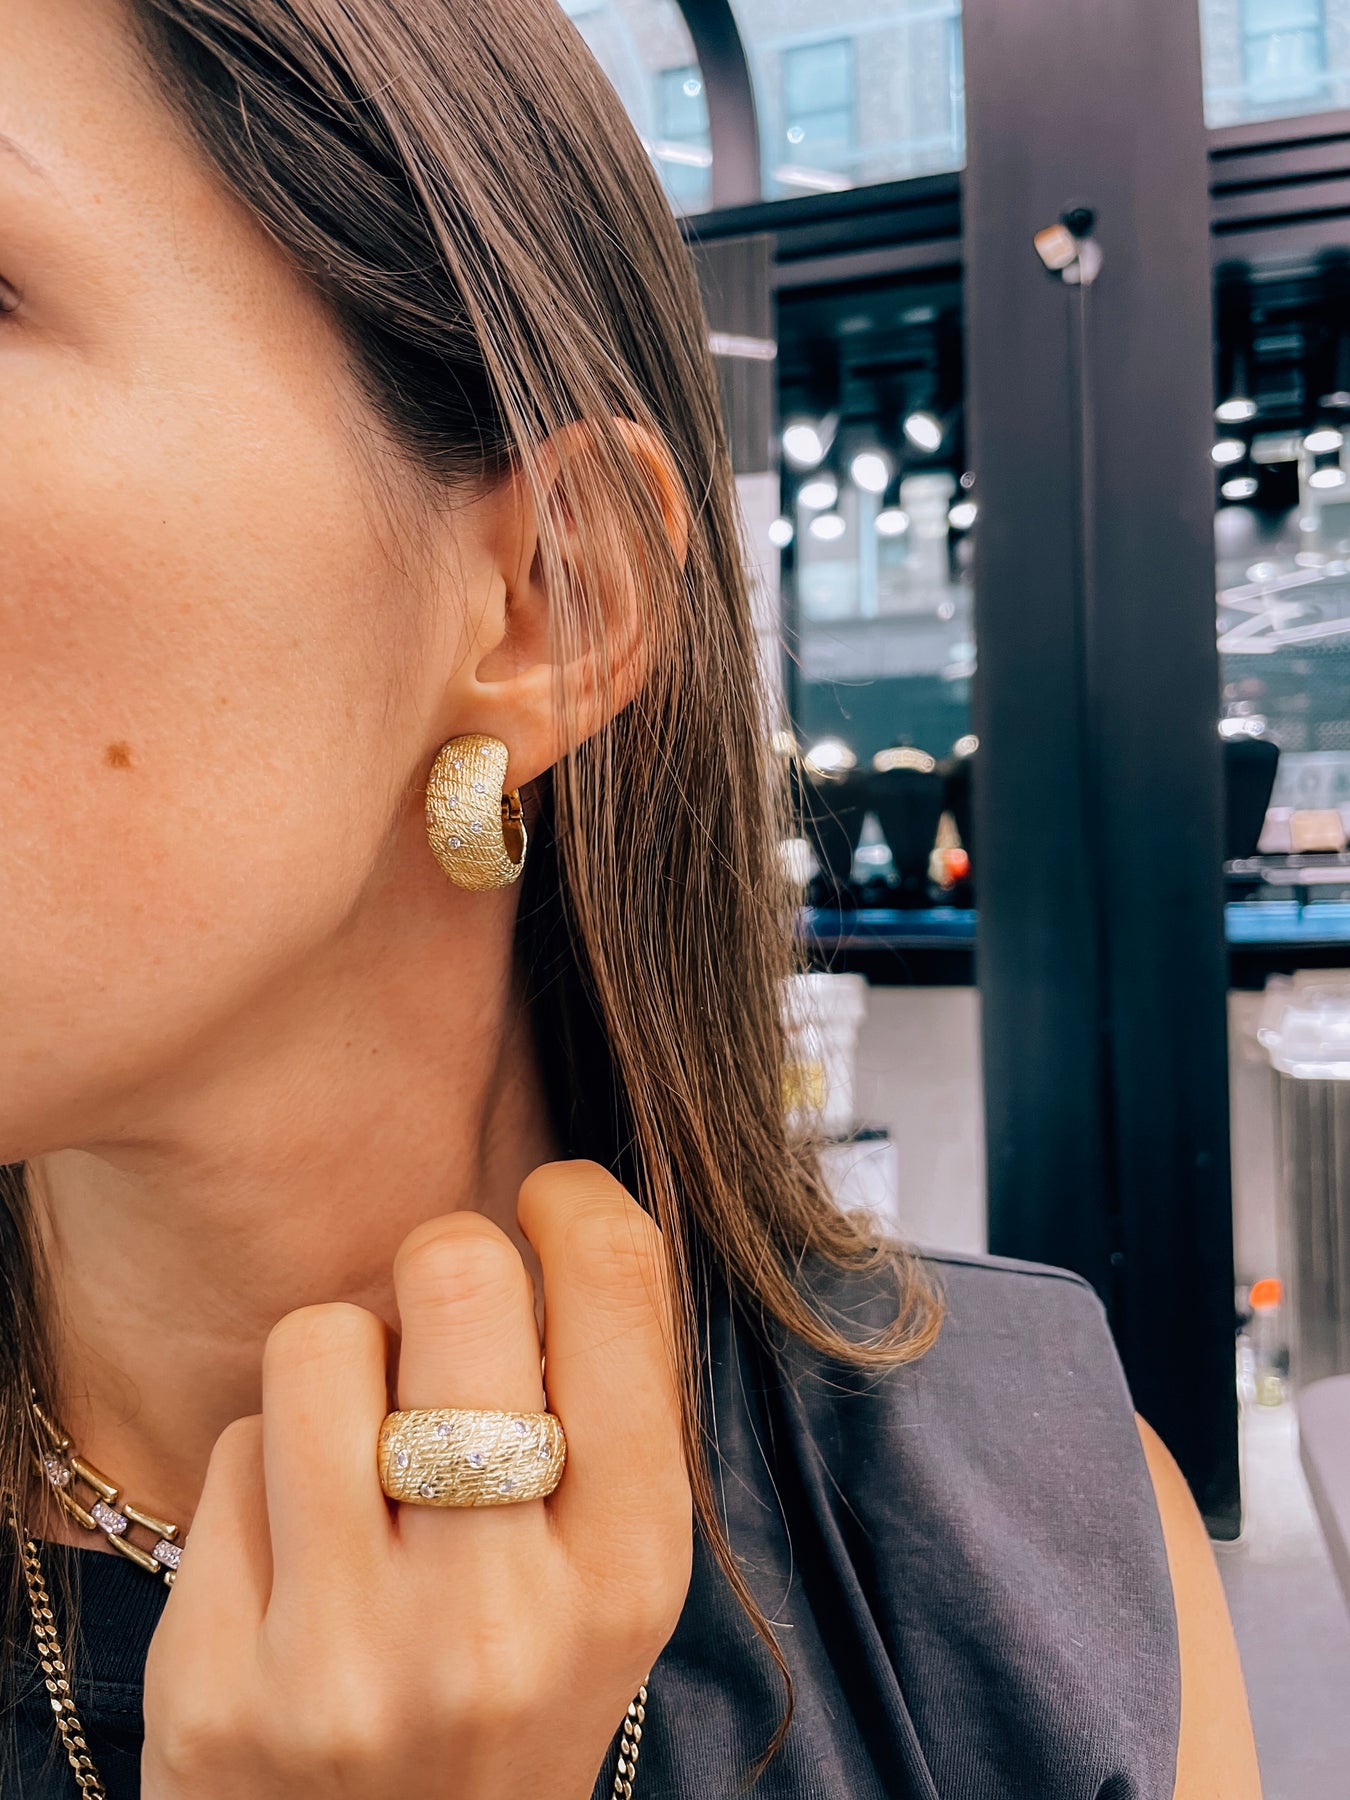 Idylle Blossom LV Single Ear Stud Earring Earrings 18K Rose Gold with  Diamond